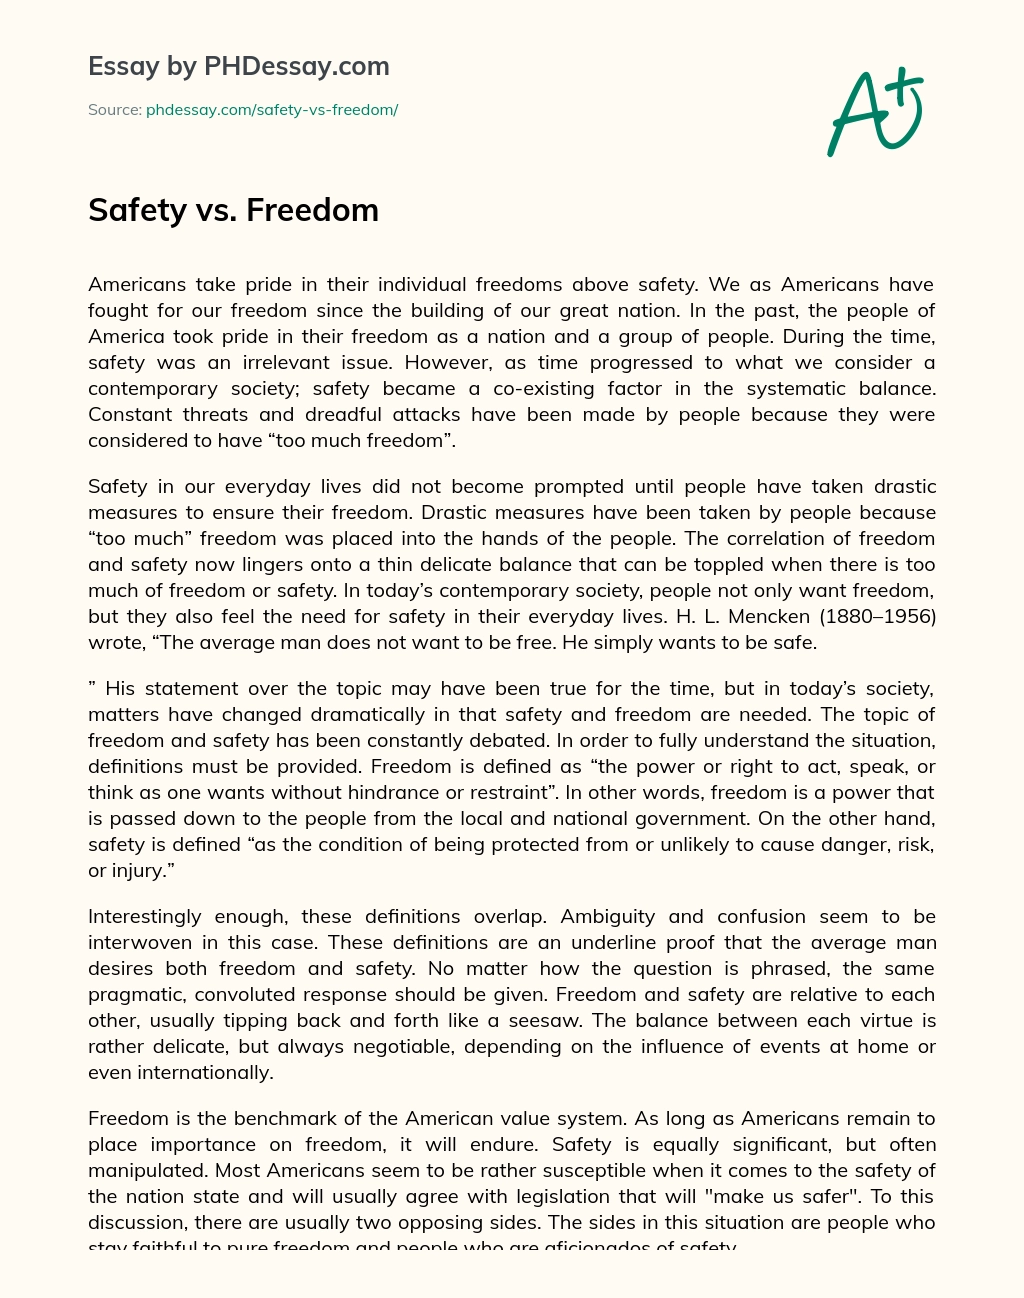 Safety vs. Freedom essay